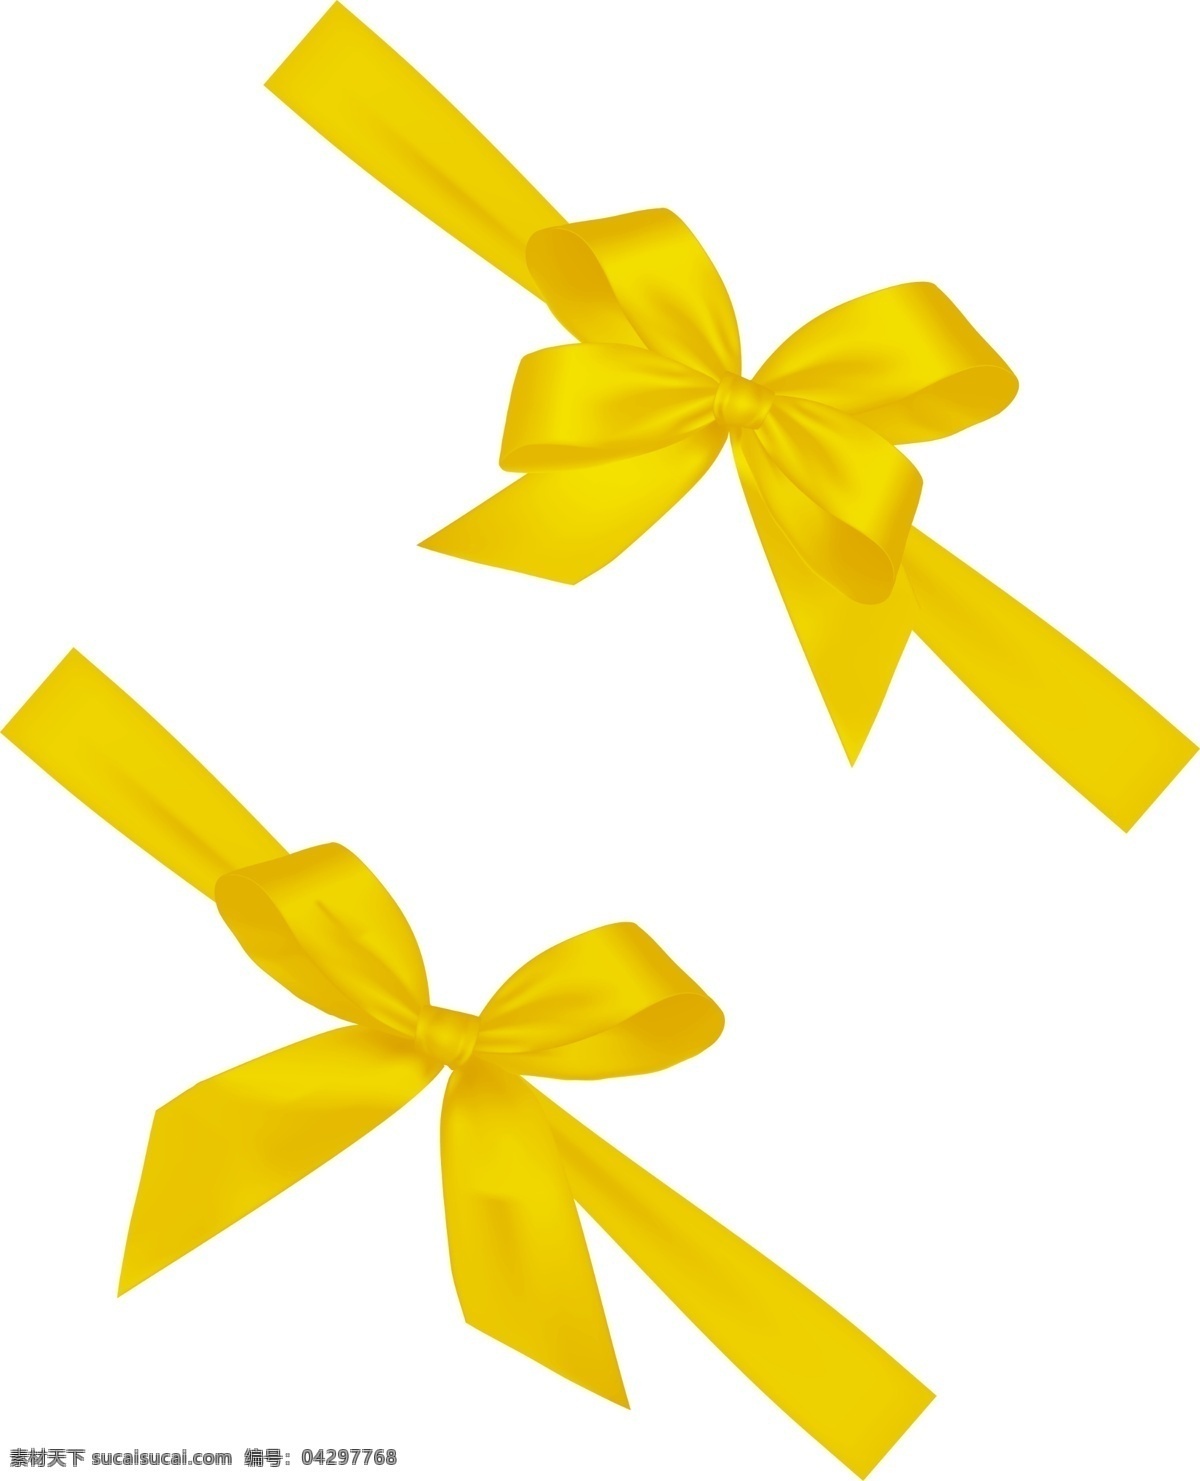 丝带礼节 黄色丝带 金色丝带 礼节 蝴蝶结 黄色绸缎 黄色礼节 零售素材